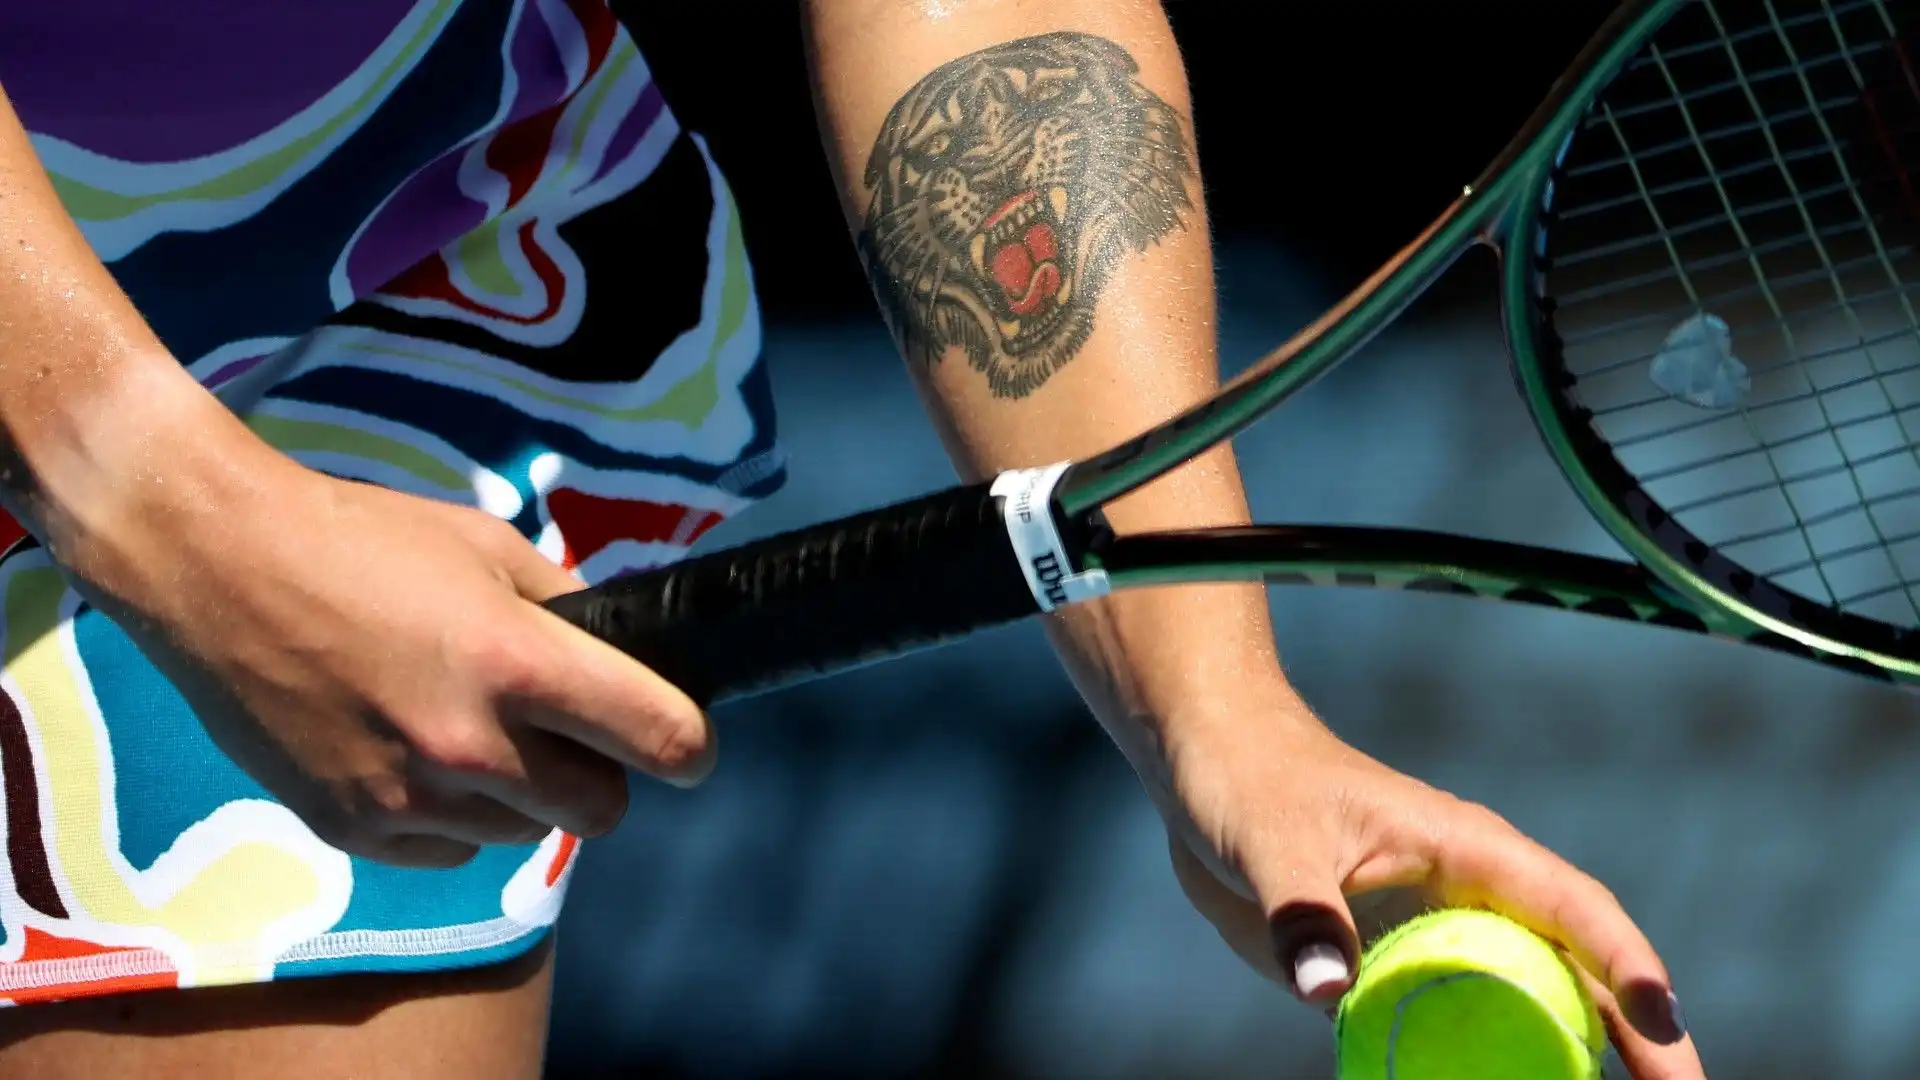 La tennista ha un enorme tatuaggio sul braccio sinistro: il disegno di una tigre feroce